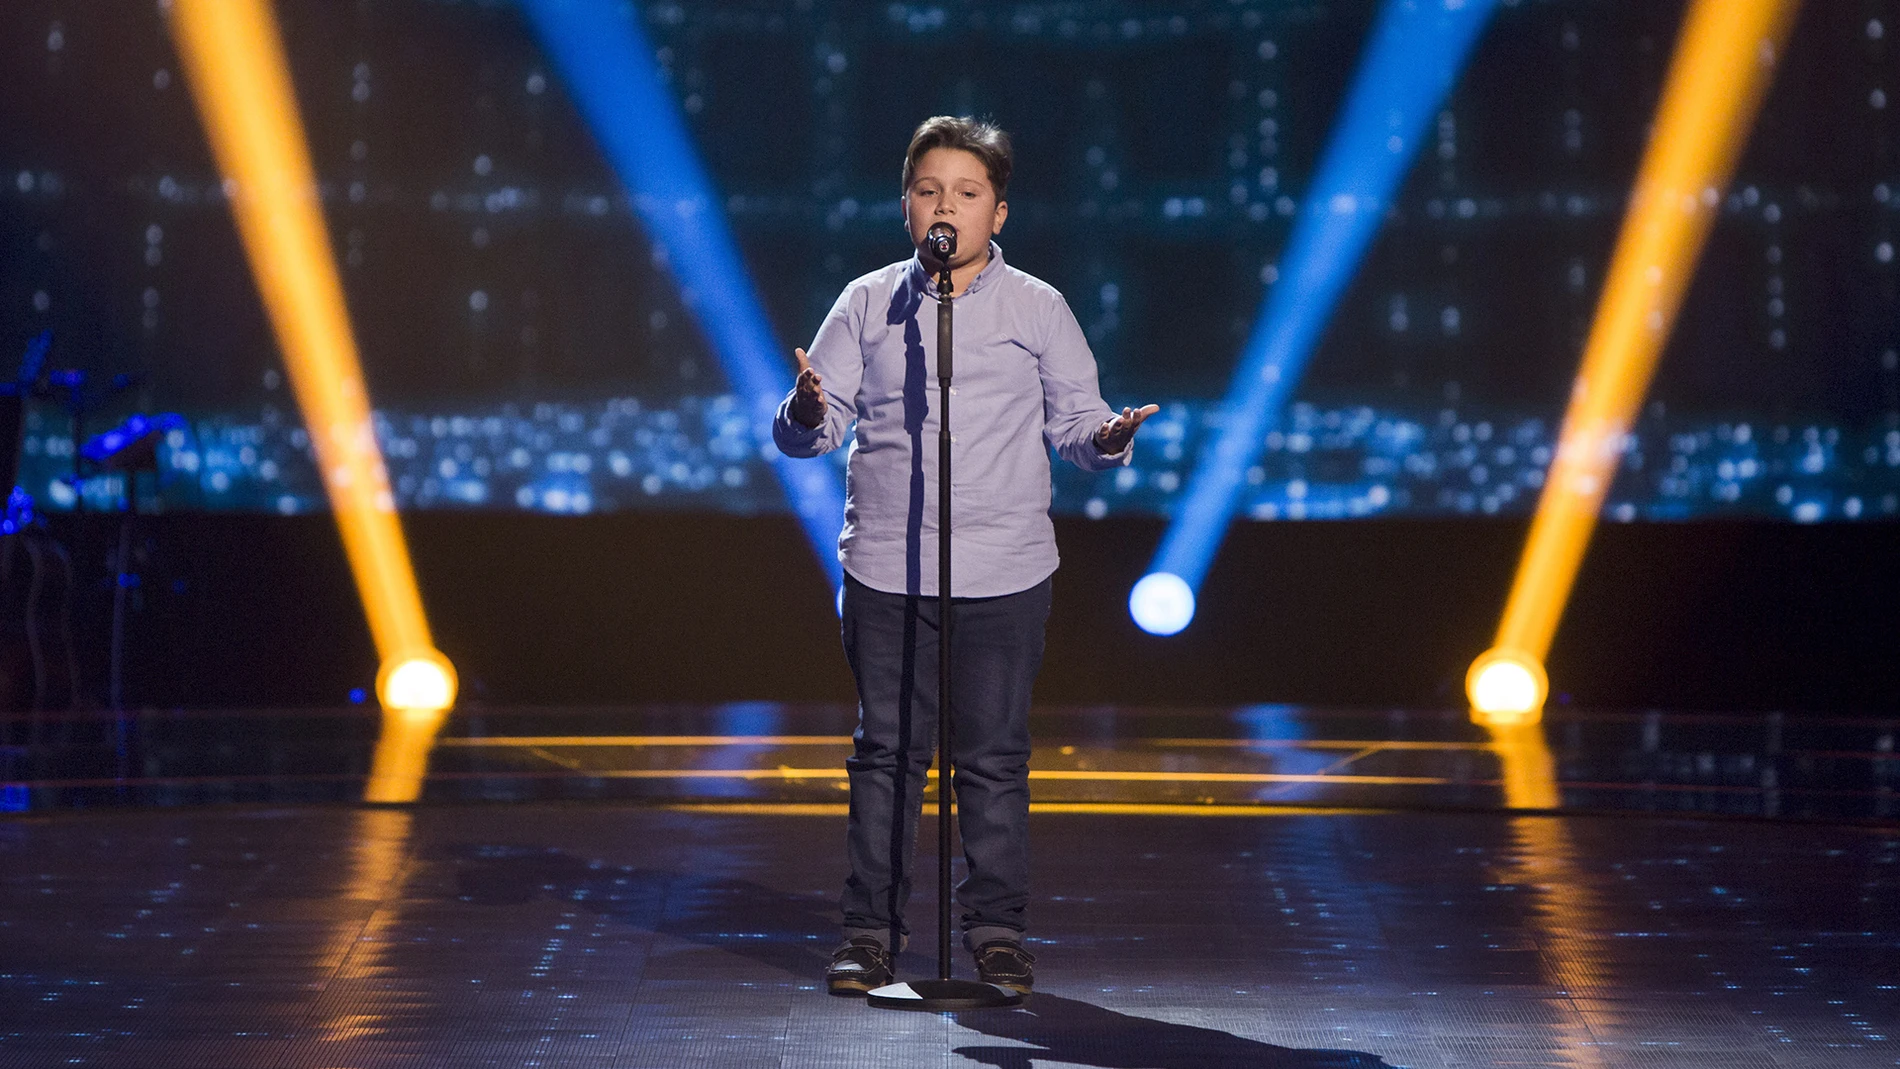 Juan Manuel Segovia canta ‘Pena, penita, pena’ en las Audiciones a ciegas de ‘La Voz Kids’